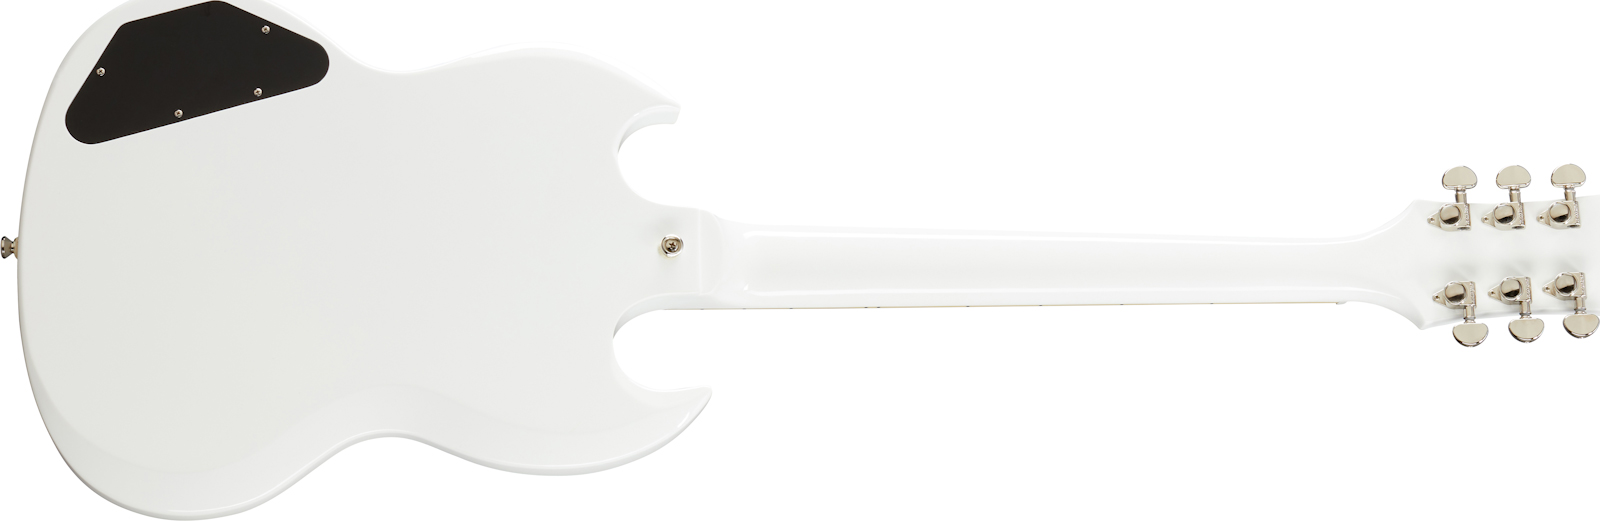 Epiphone Sg Standard Lh Gaucher 2h Ht Lau - Alpine White - E-Gitarre für Linkshänder - Variation 1